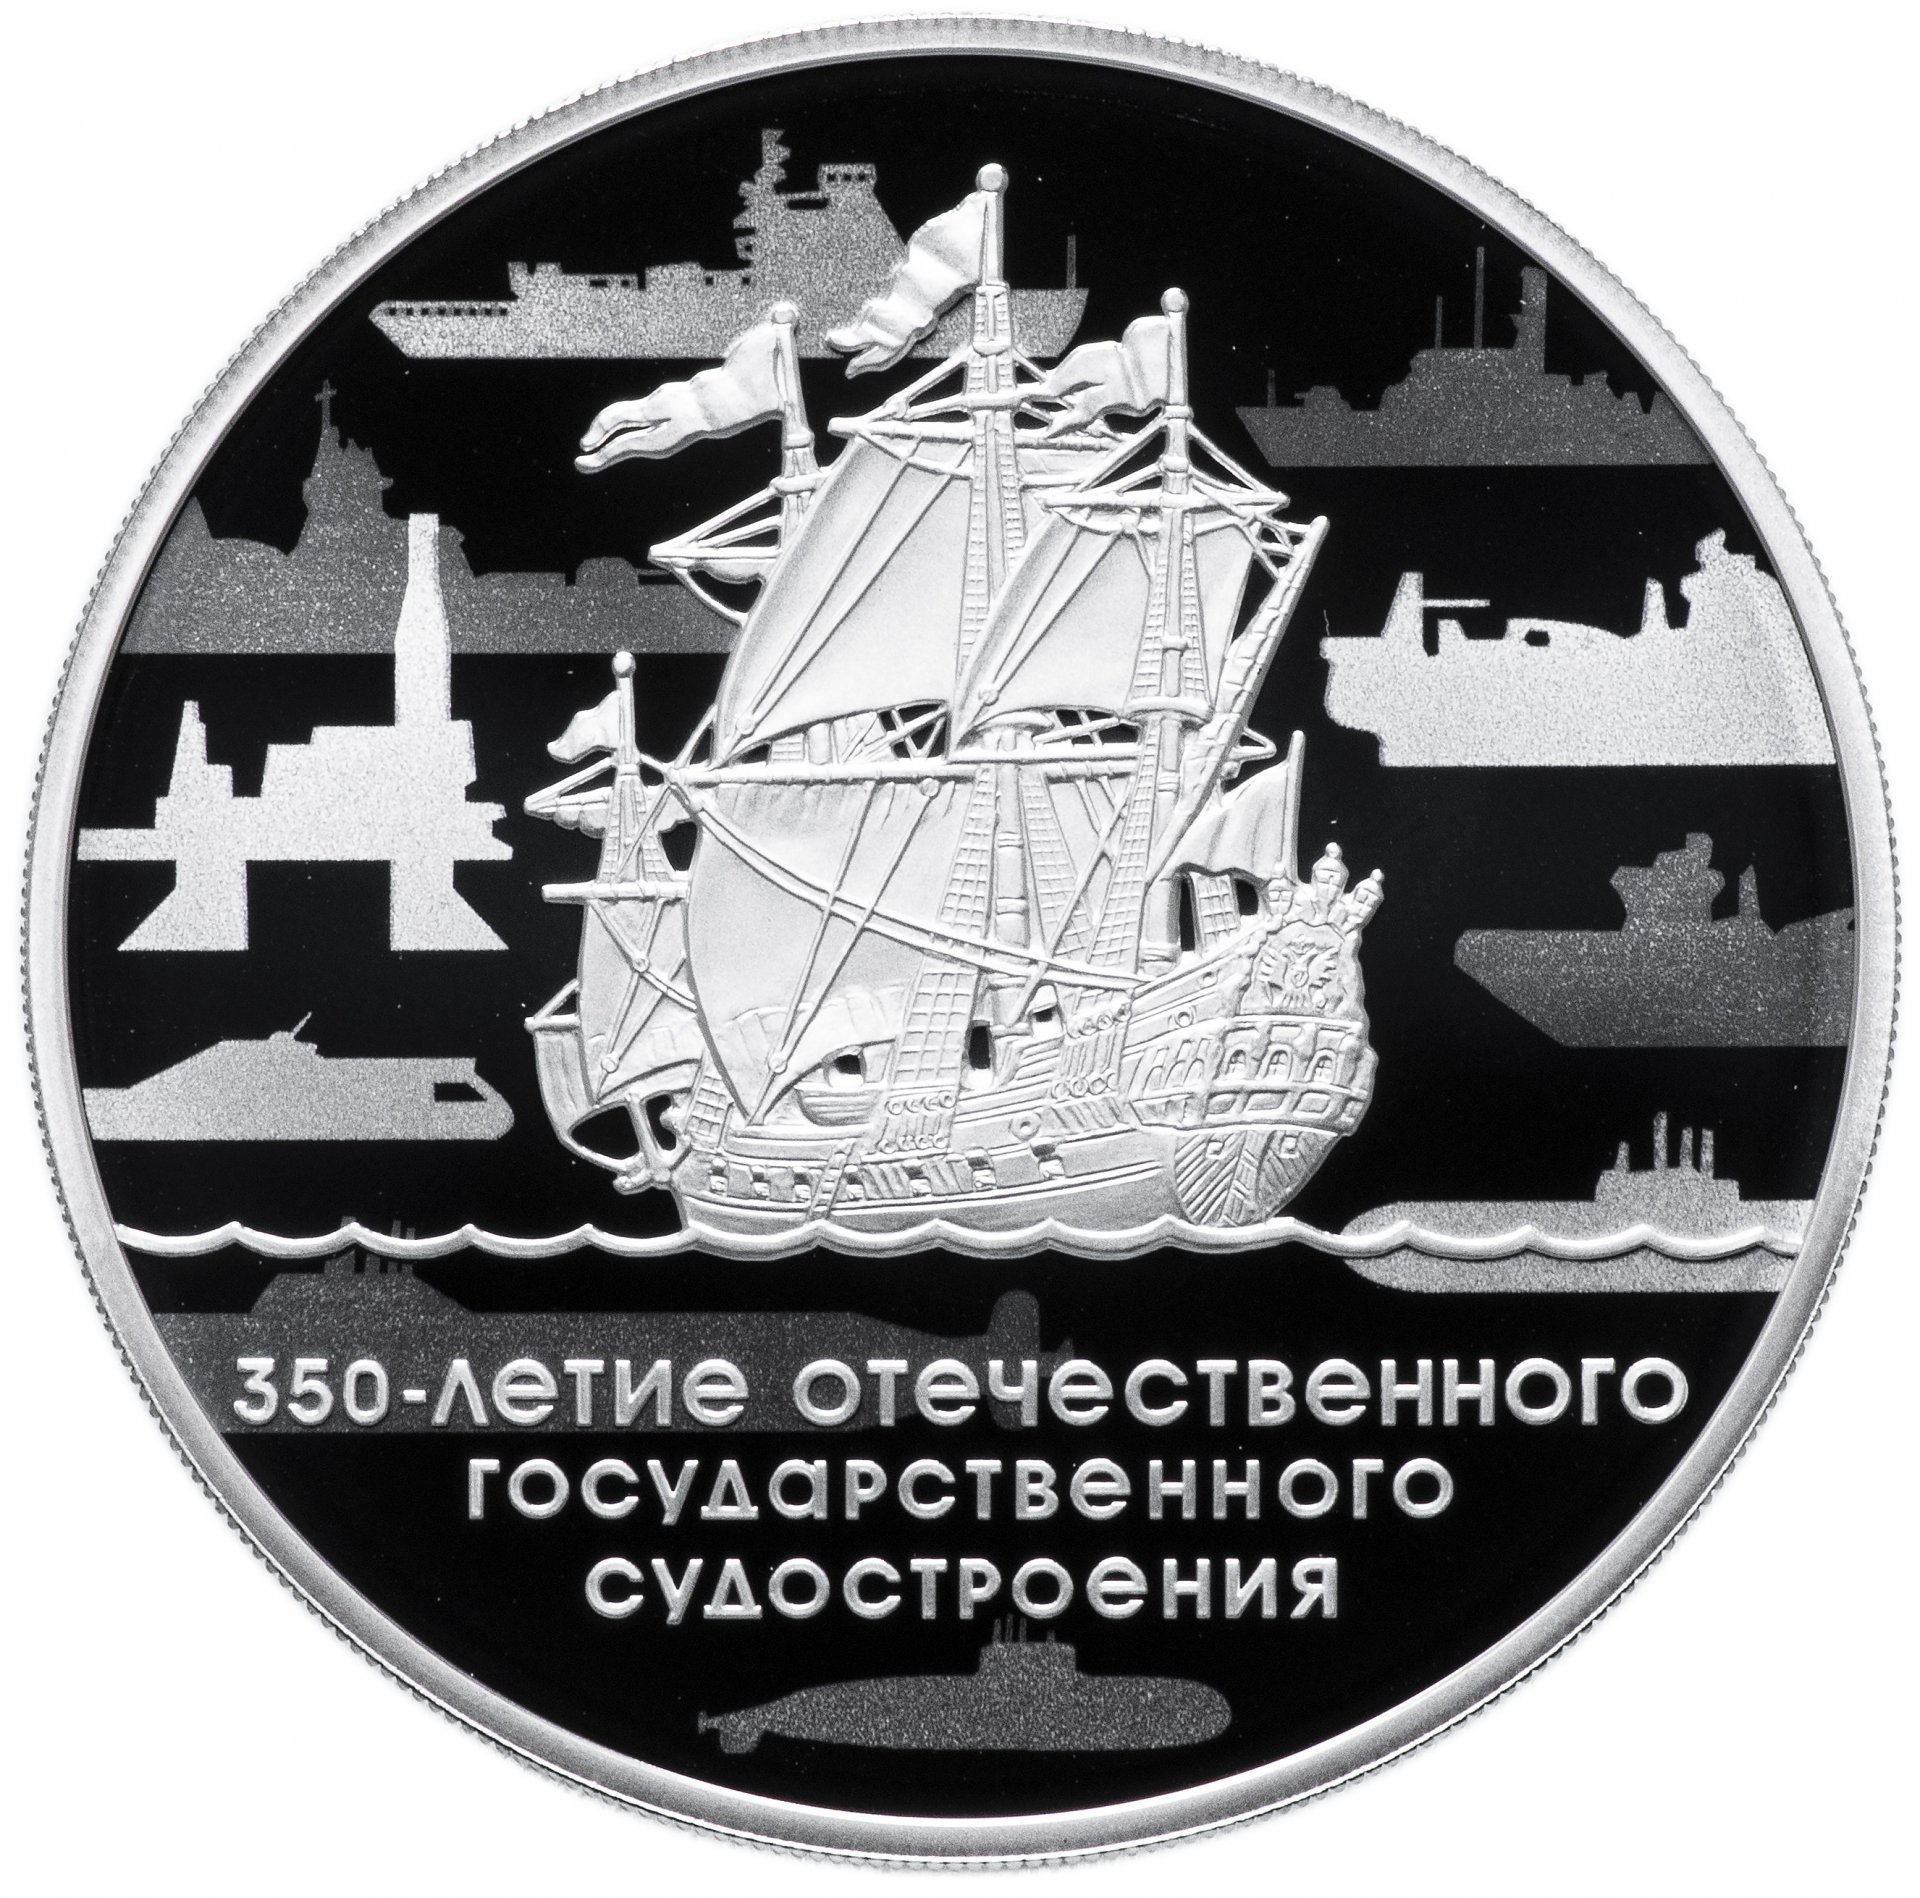 Монета серебро 350 летие отечественного гос судостроения